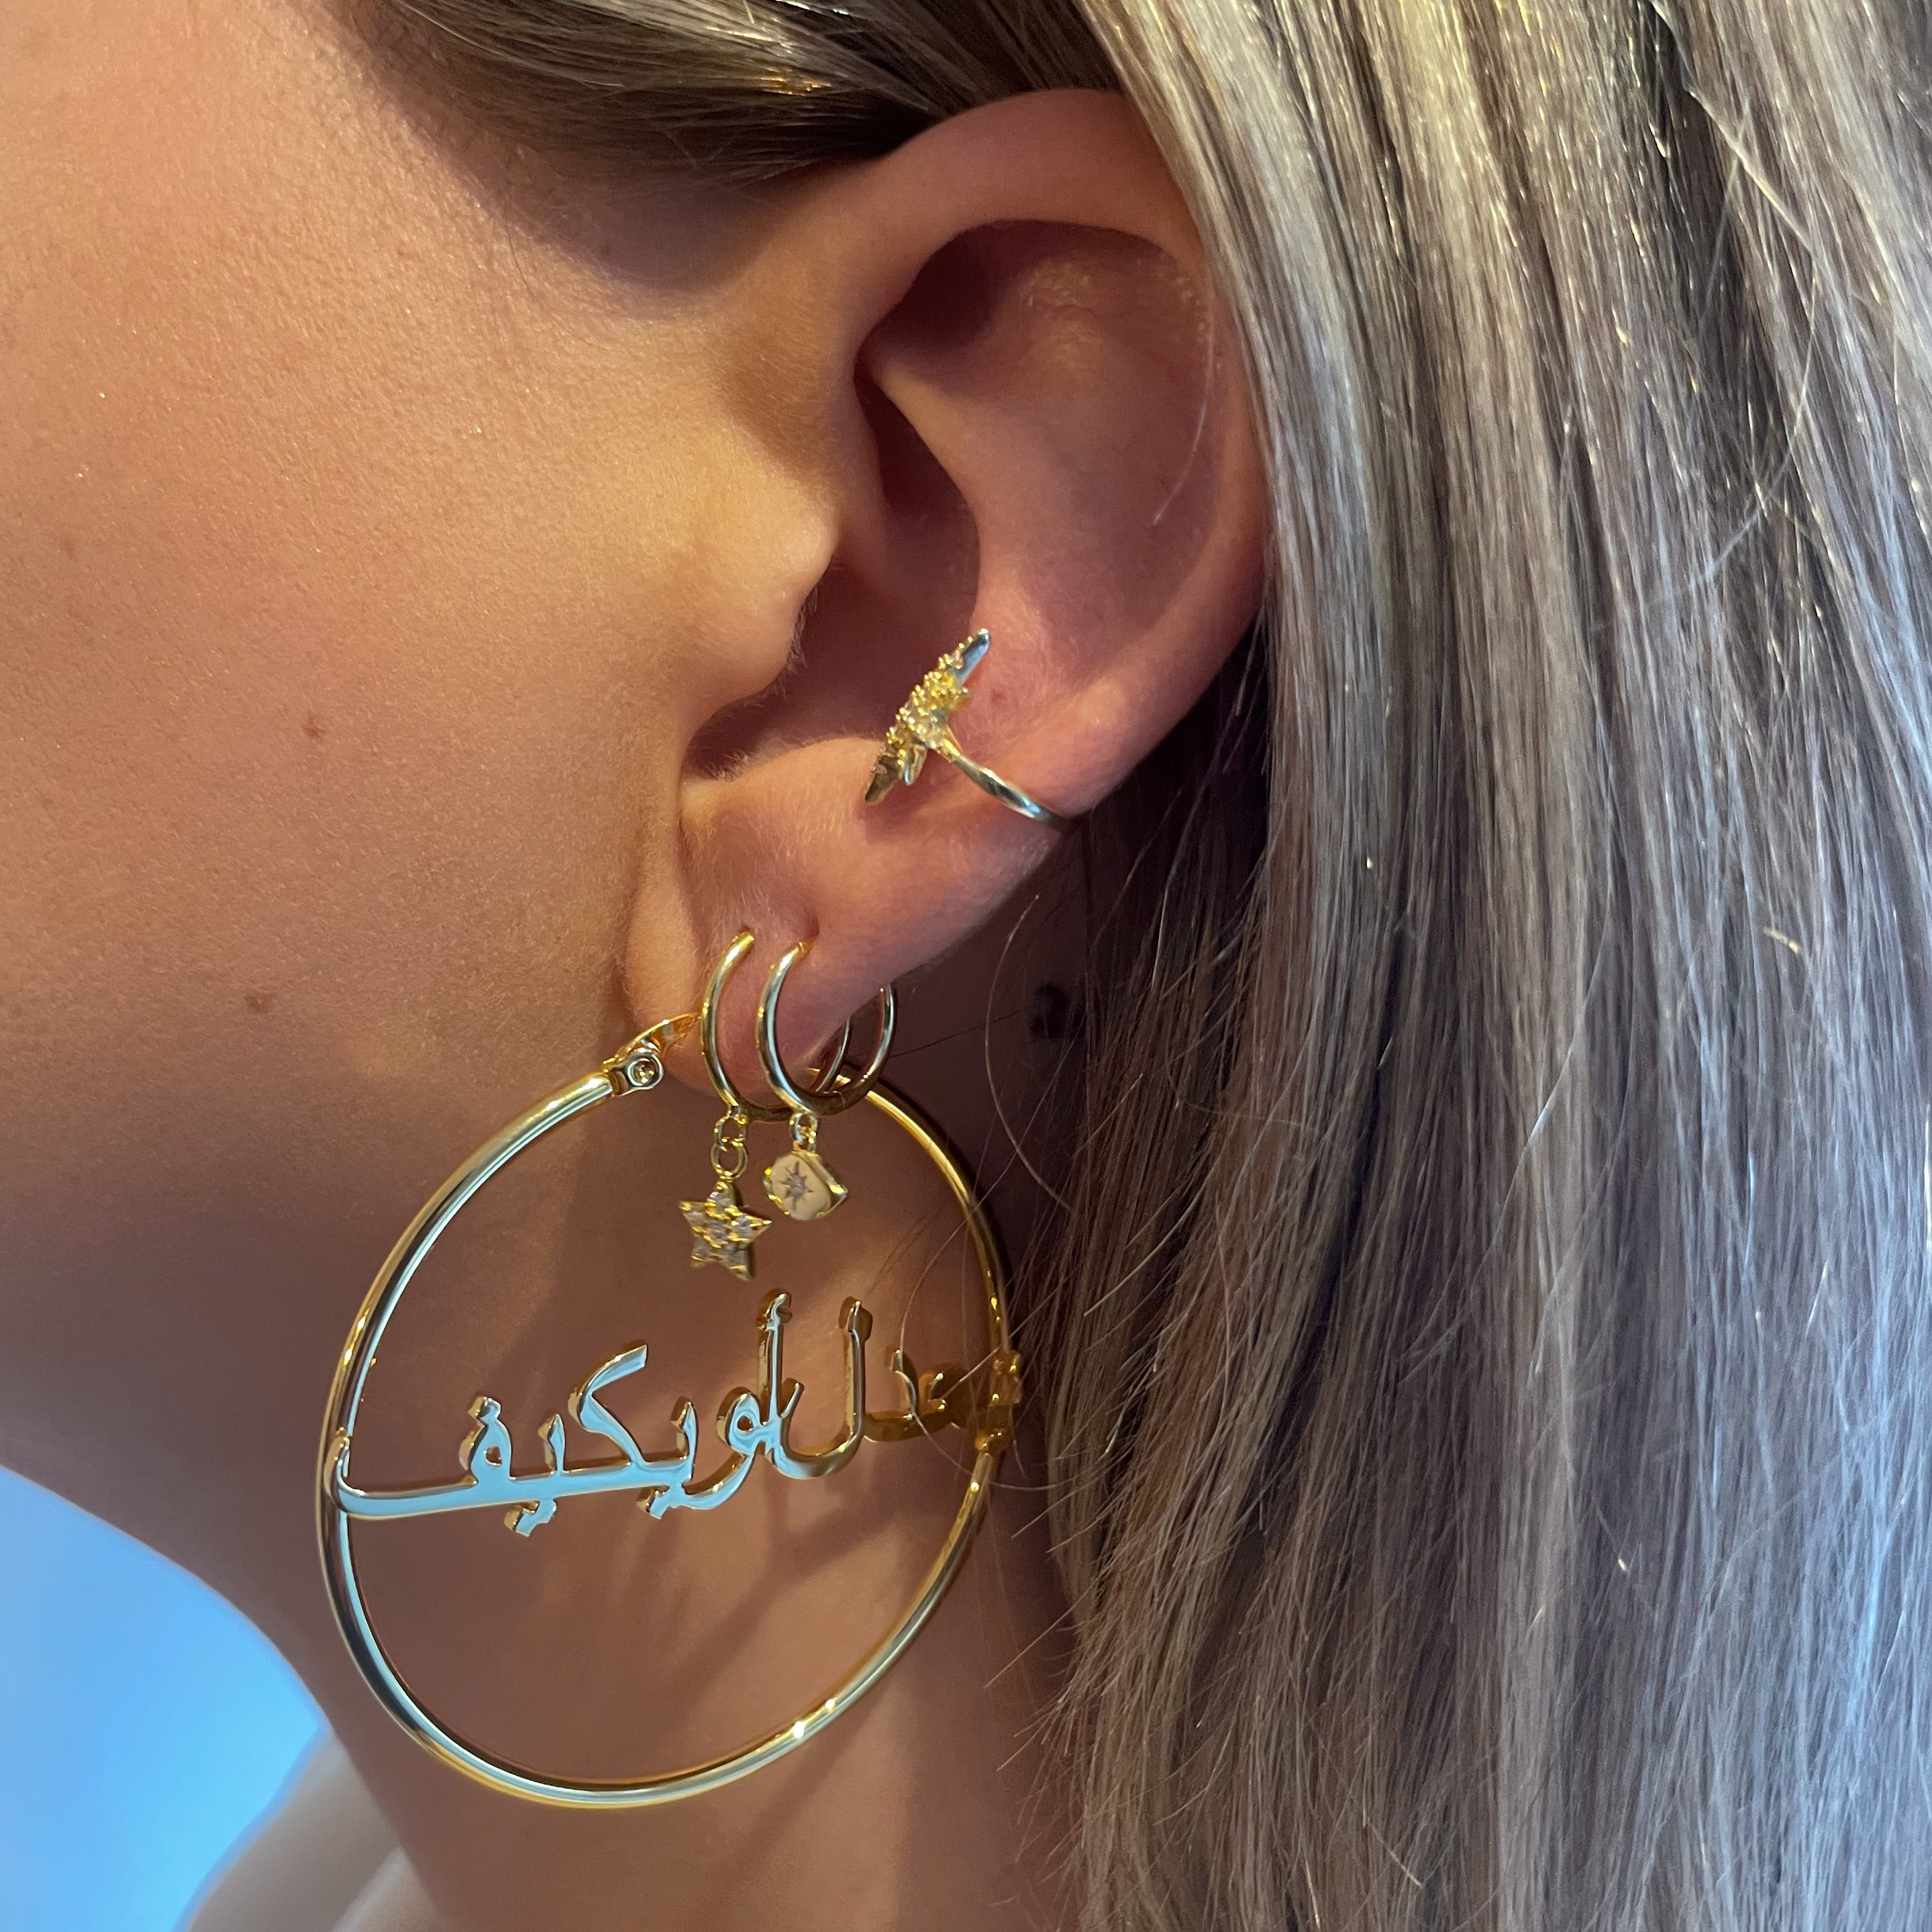 PERSONALIZED HOOP EARRING - Arabic